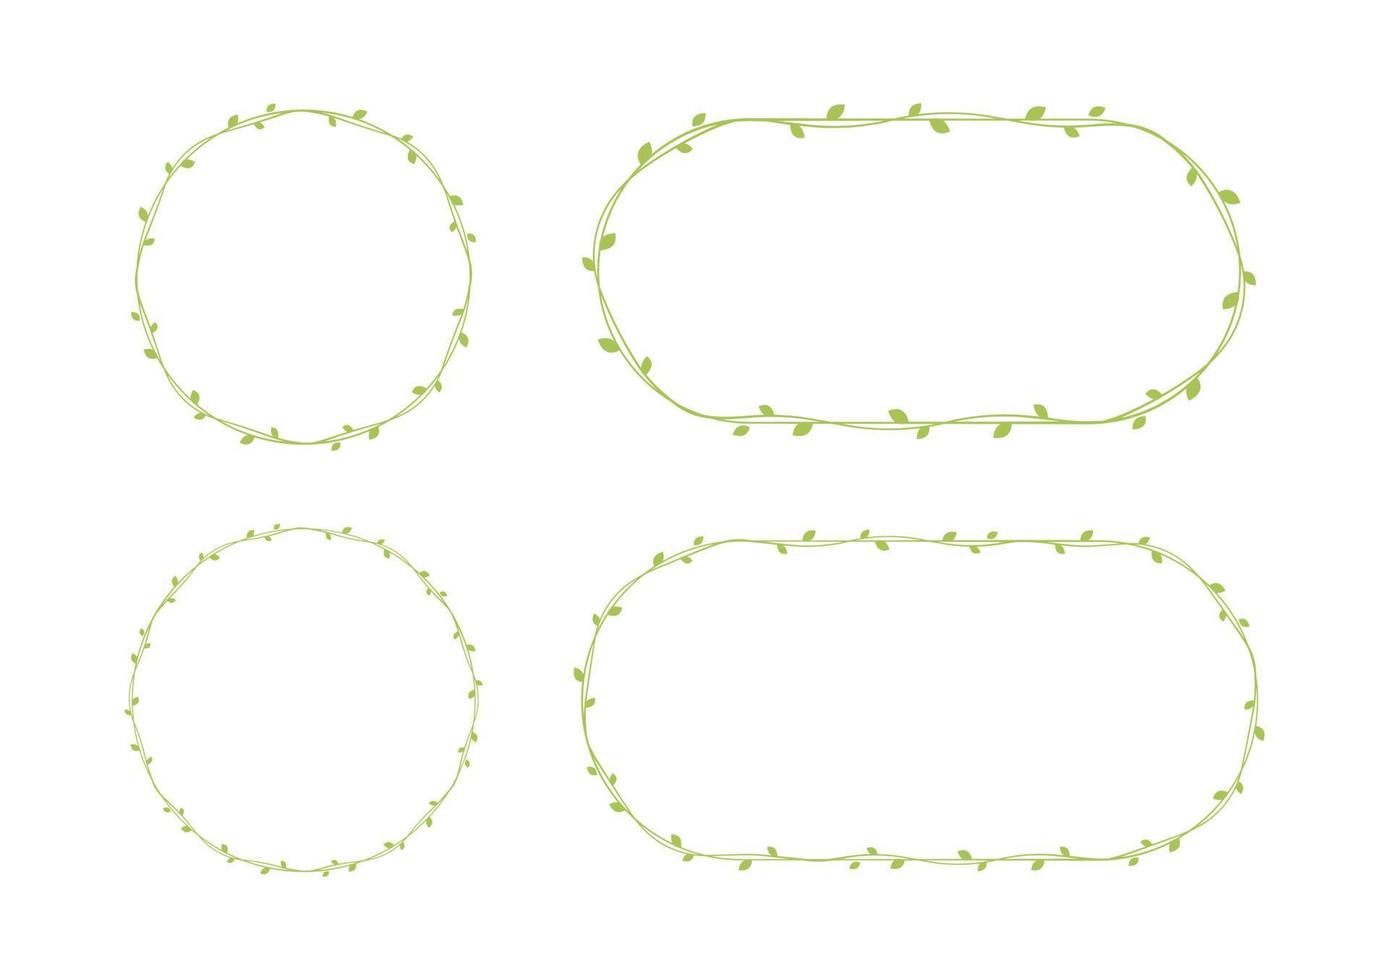 verde vino marcos y fronteras colocar, floral botánico diseño elemento vector ilustración